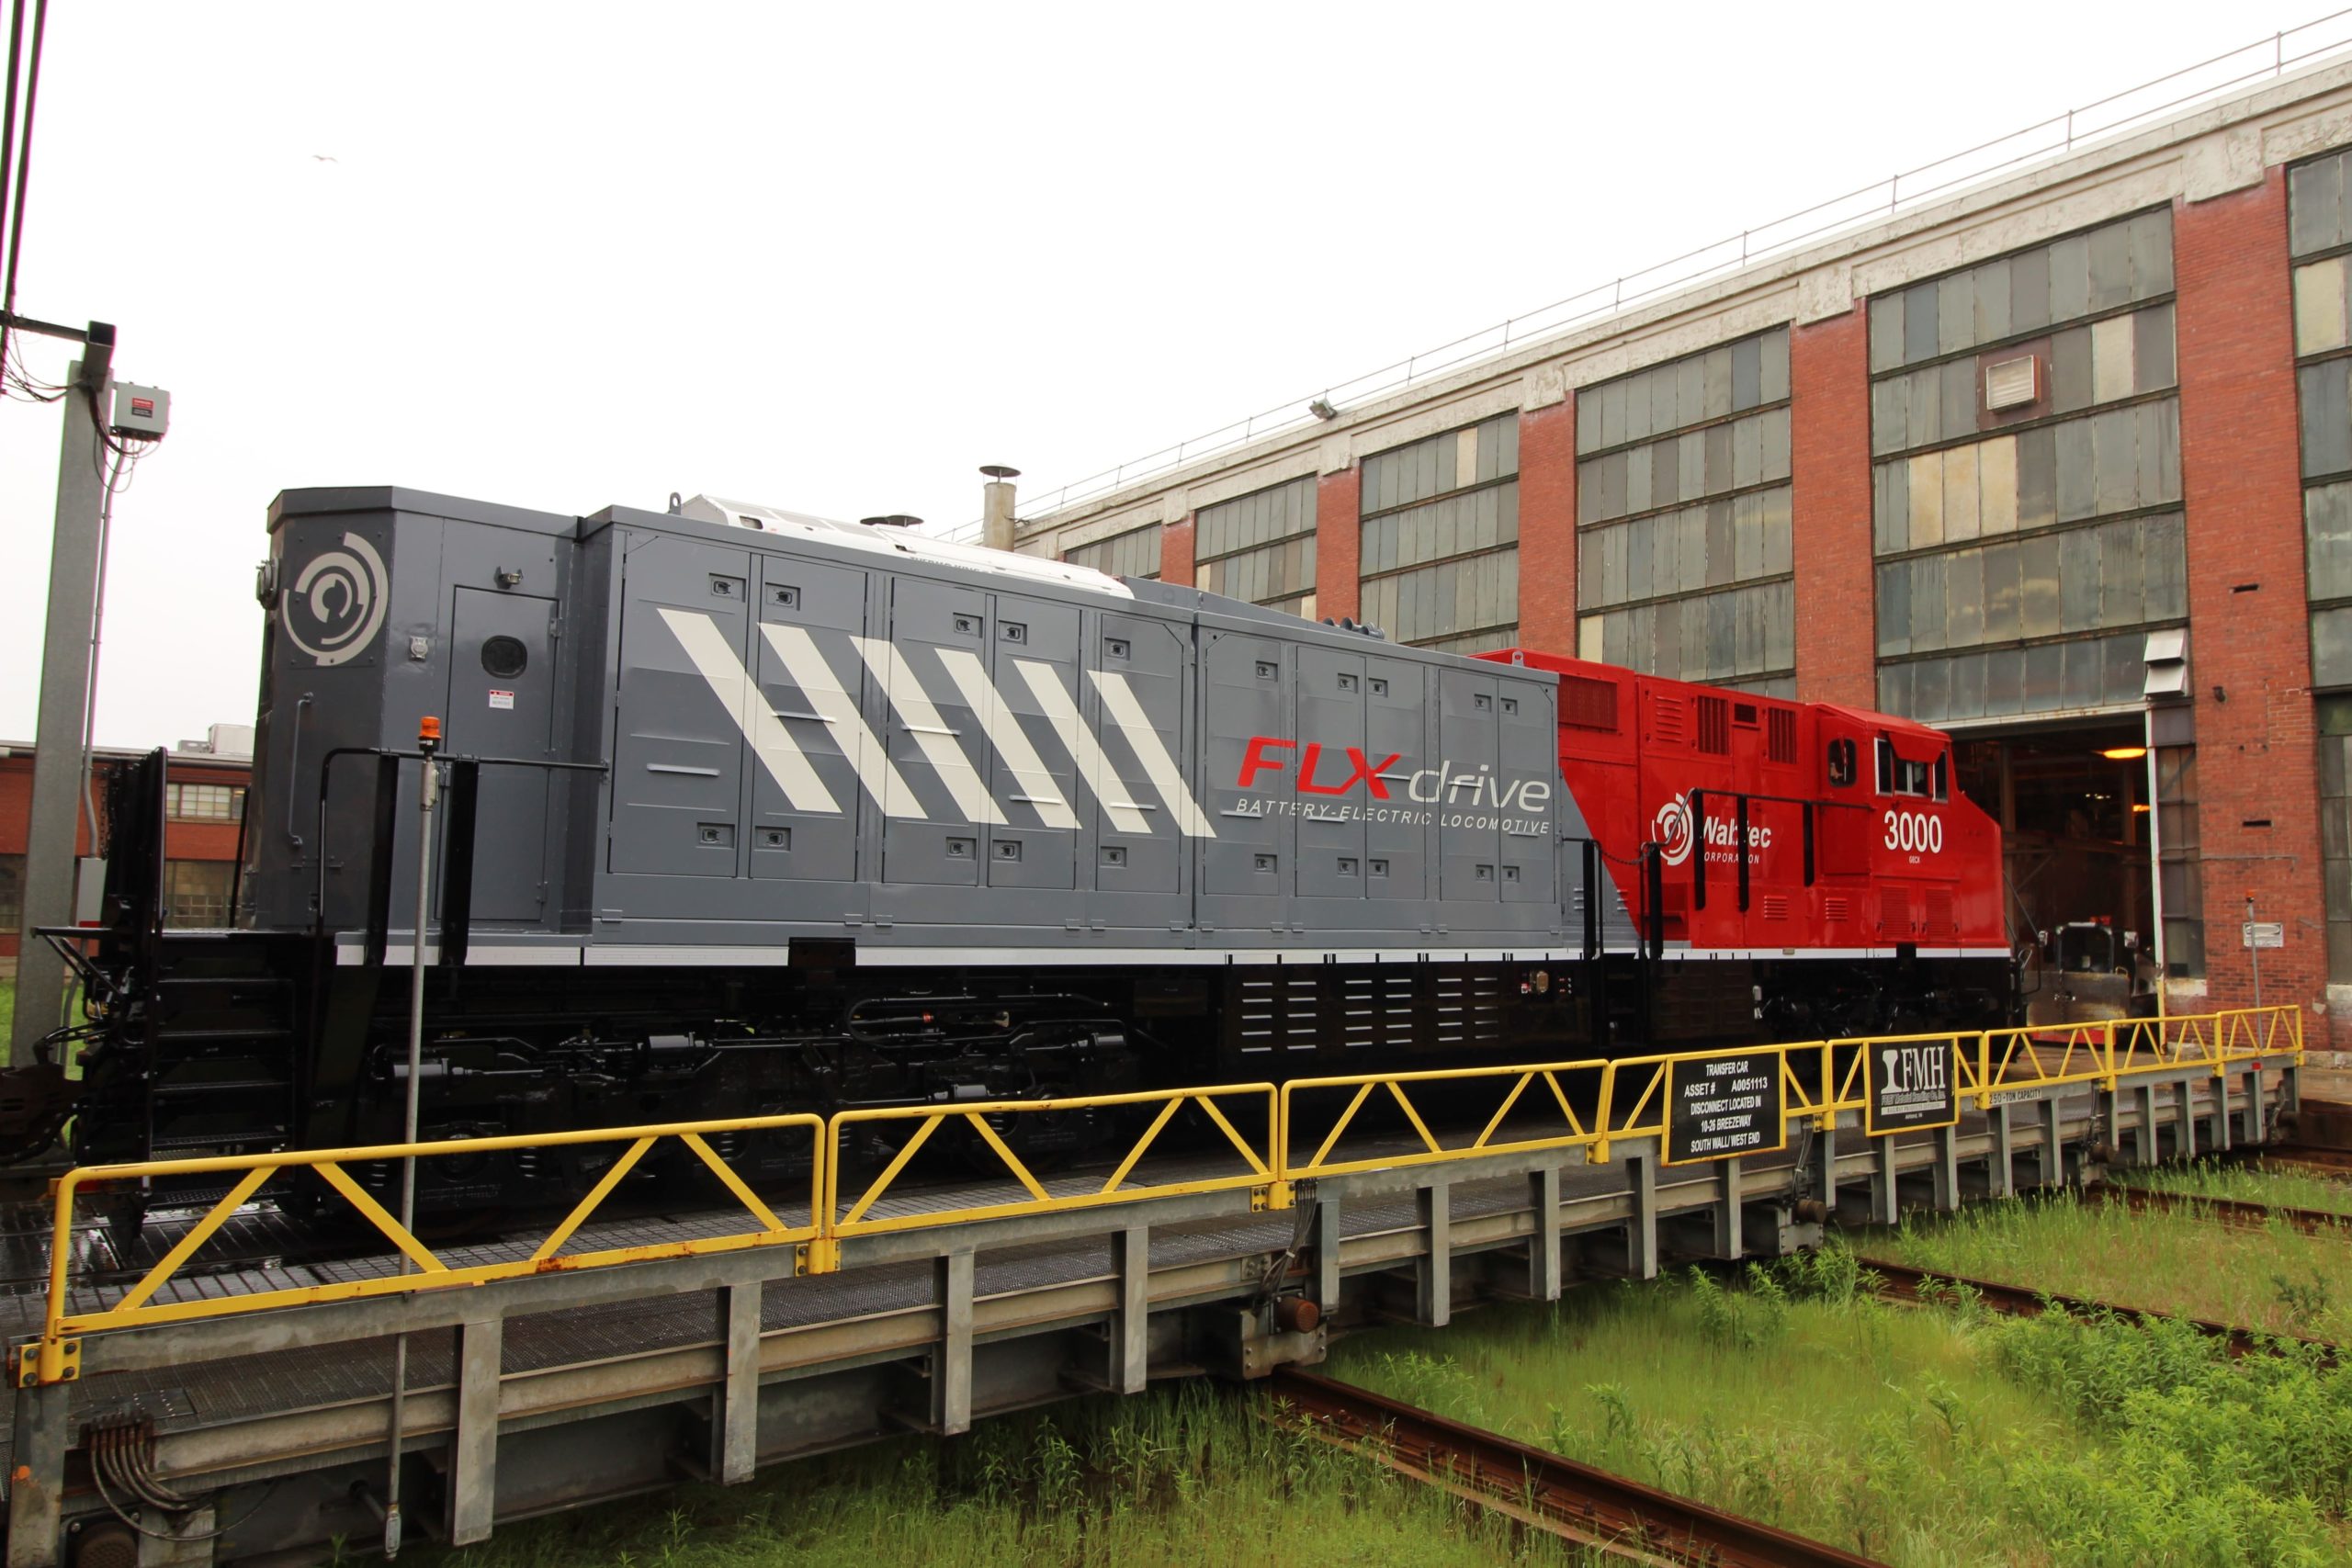 Vale compra três locomotivas elétricas FLXdrive da Wabtec para descarbonizar operações ferroviárias. Na imagem: Locomotiva elétrica FLXdrive da Wabtec comprada pela Vale (Foto: Divulgação)